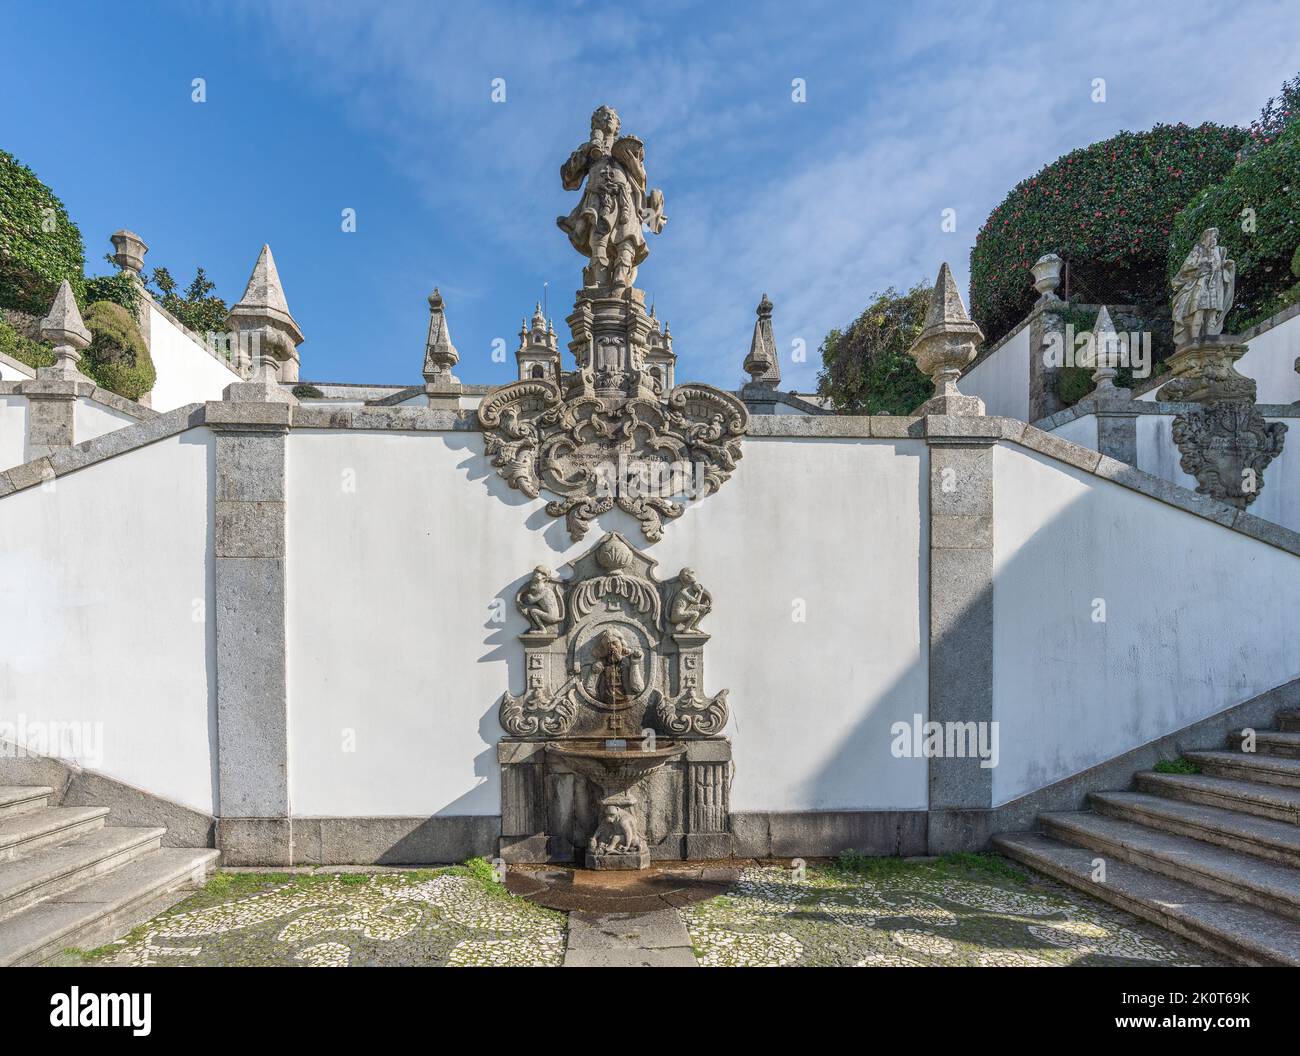 Probieren Sie den Brunnen und die Statue von Joseph of Egypt auf der Five Senses Treppe im Heiligtum von Bom Jesus do Monte - Braga, Portugal Stockfoto